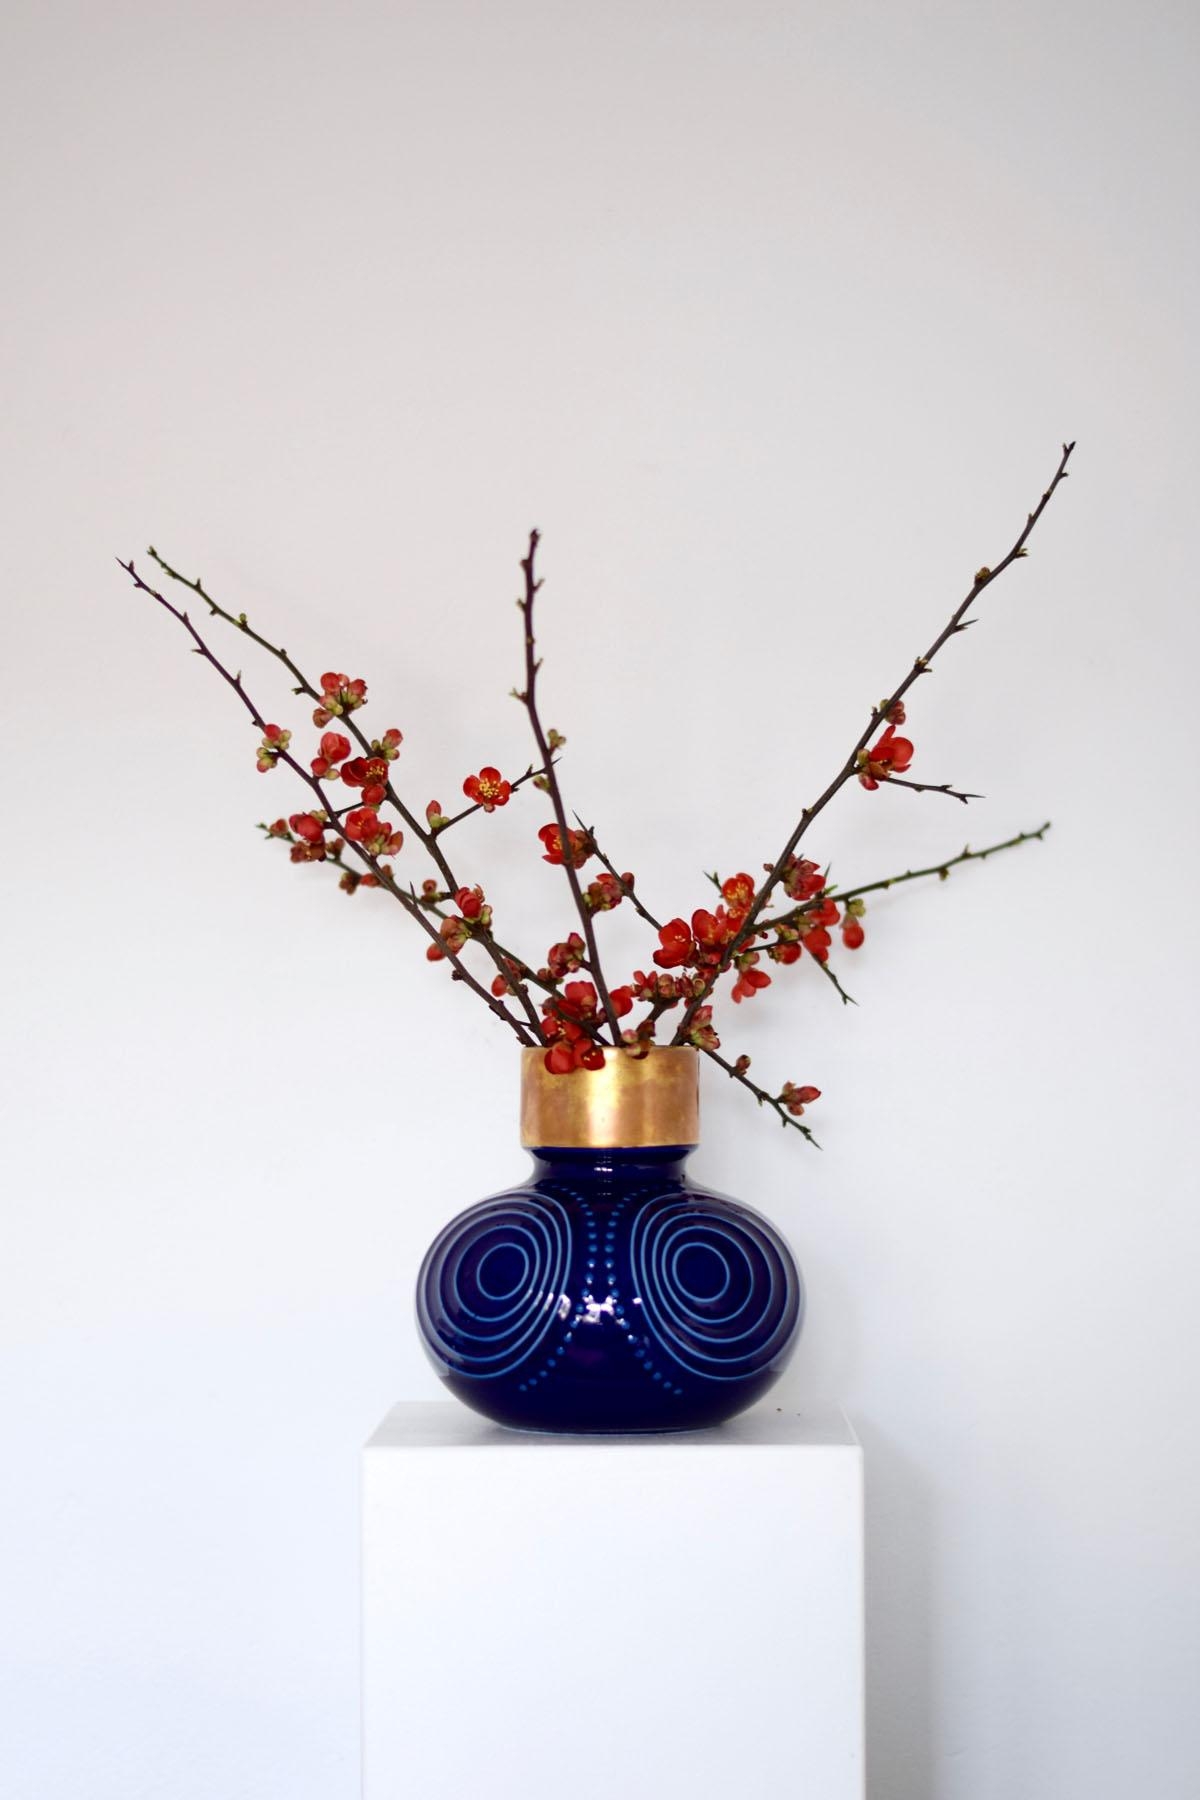 Ein Mini-Hauch von Frühling...
#vasen #vintage #midcentury #lieblingsdinge #freshflowerfriday